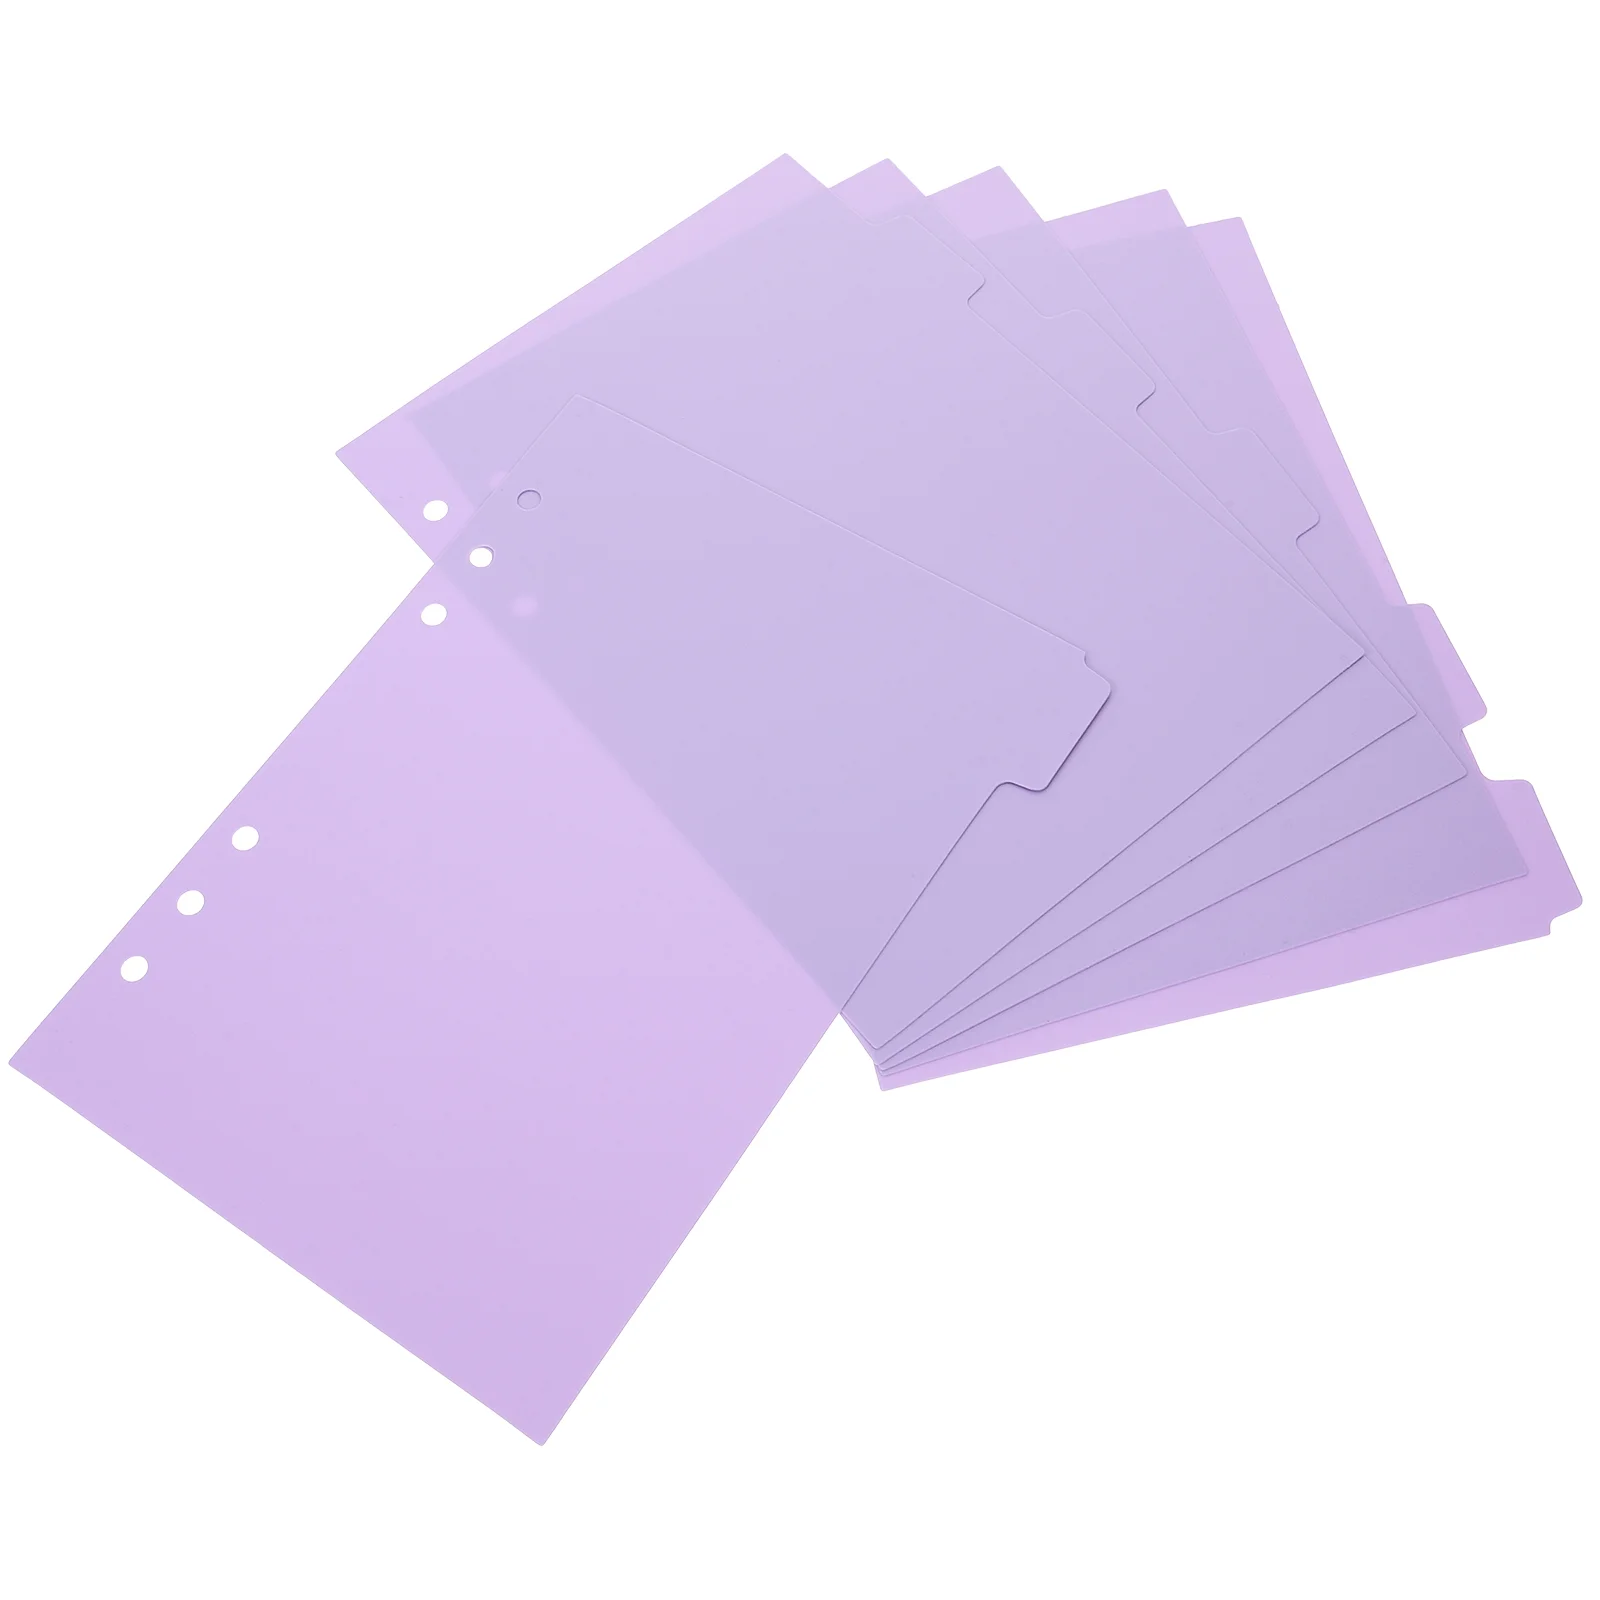 

Папка для индексных карт, пластиковые разделители для язычков, разделитель для бумаг, 6 разделителей, защитная бумага для страниц